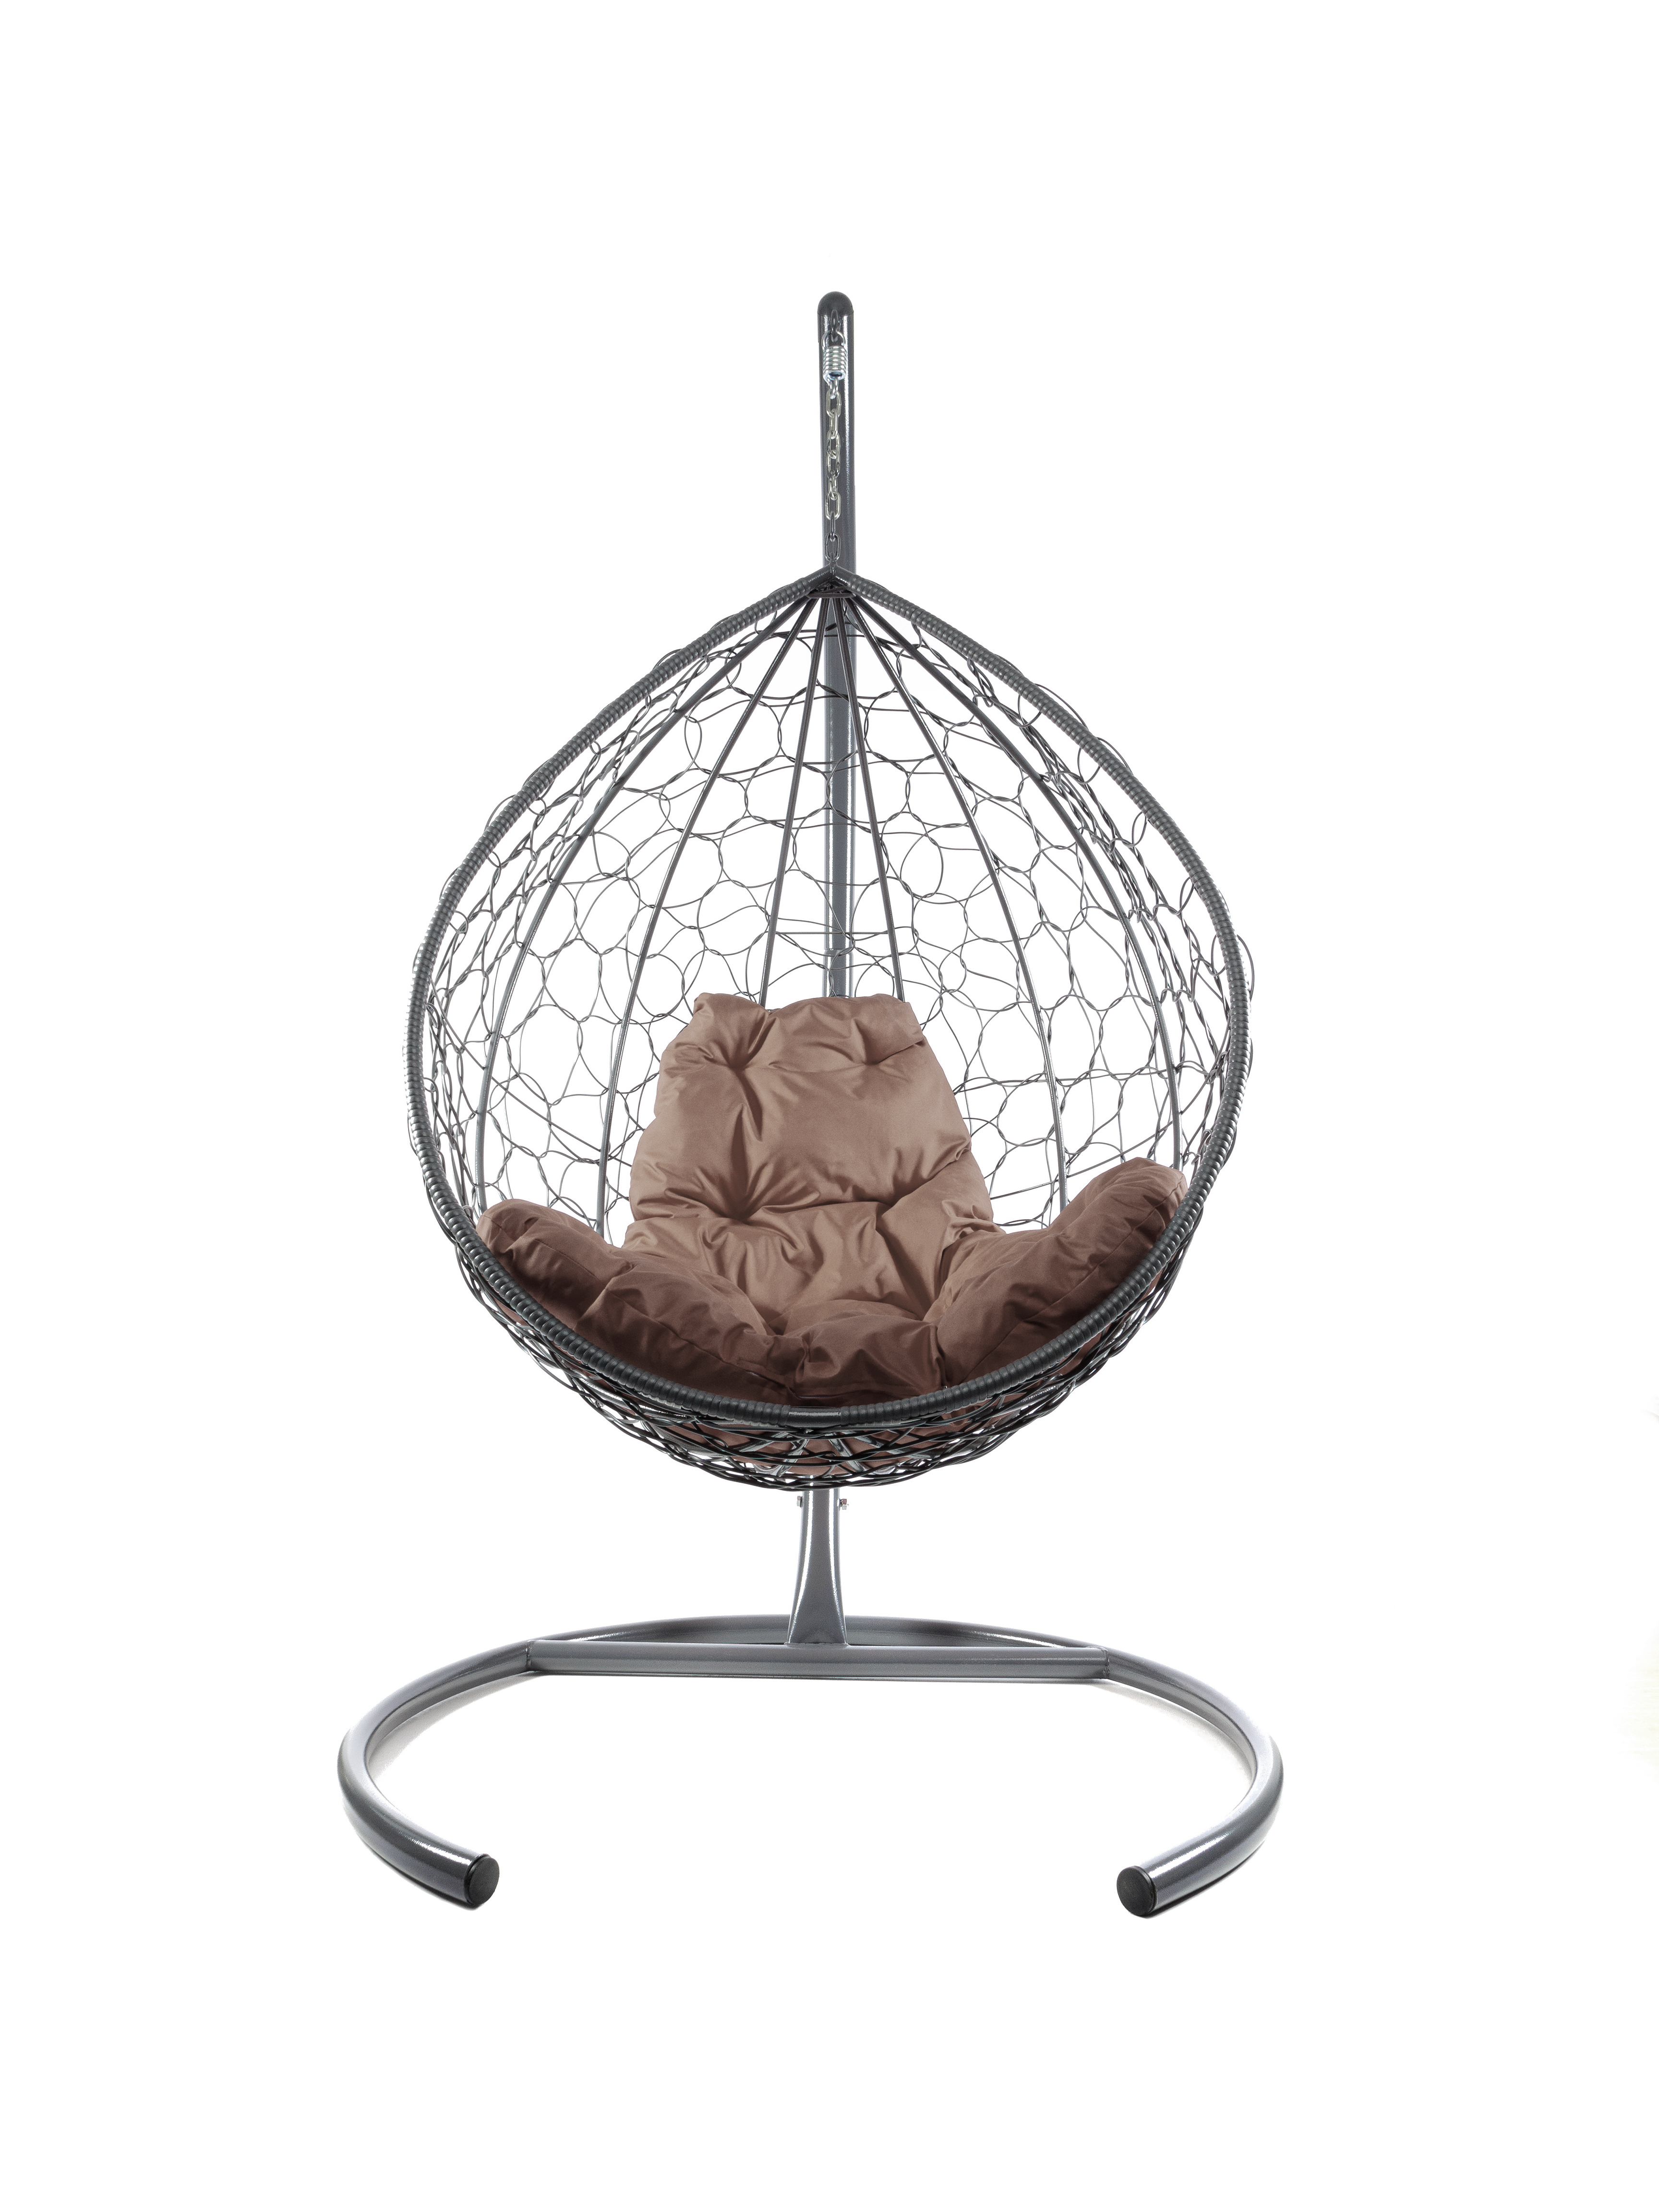 фото Подвесное кресло серый m-group капля ротанг 11020305 коричневая подушка